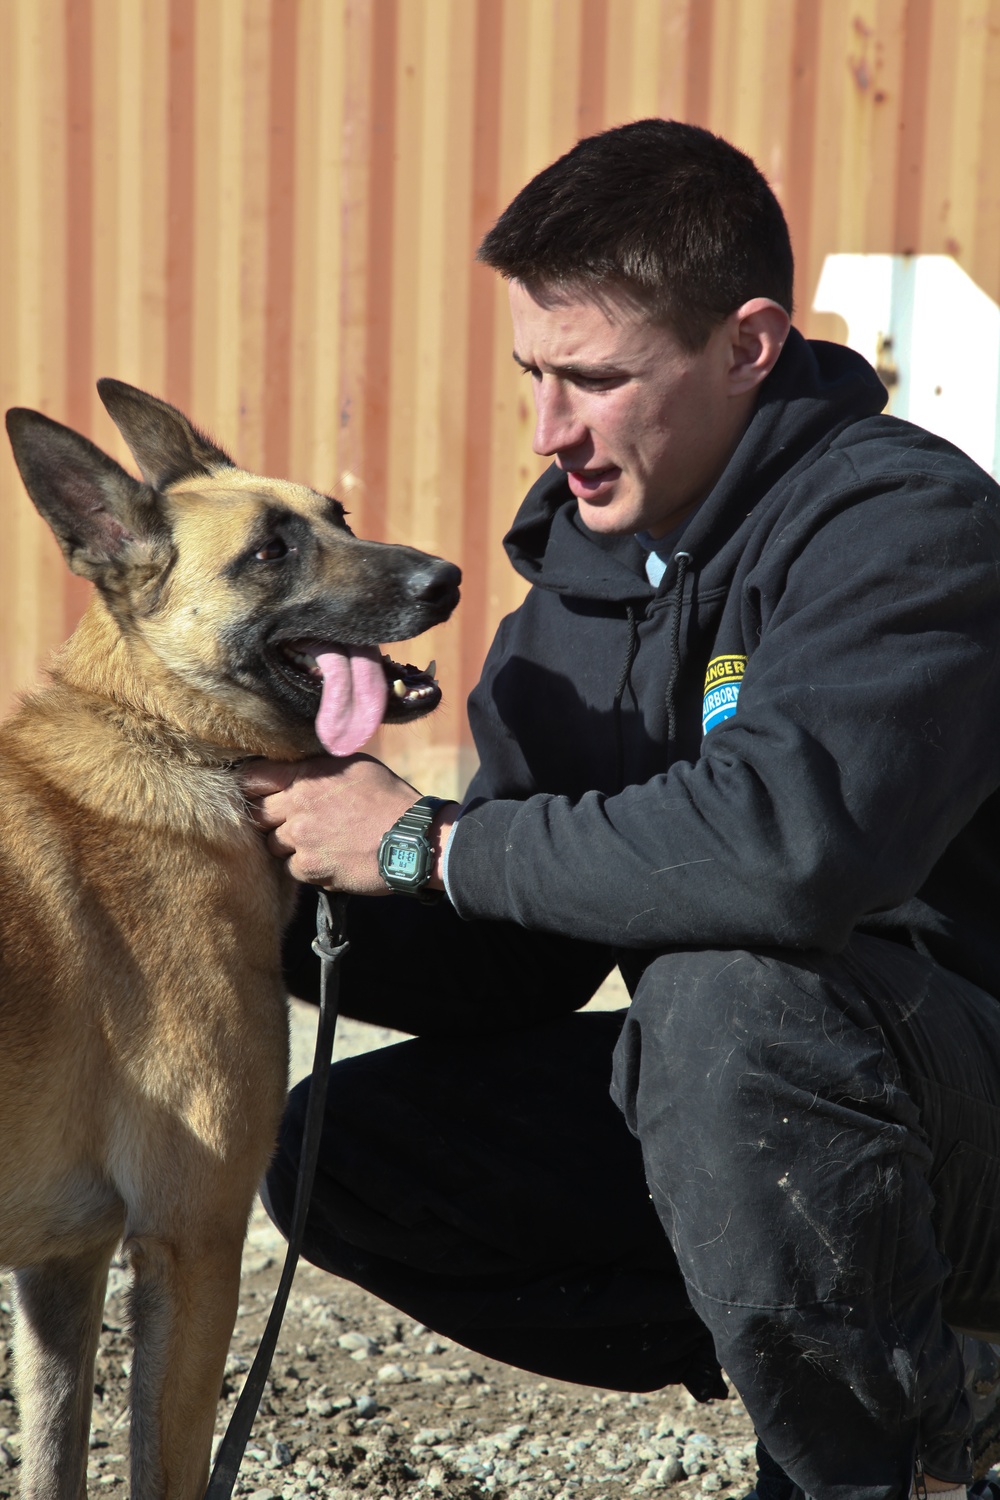 Dog handlers in Afghanistan